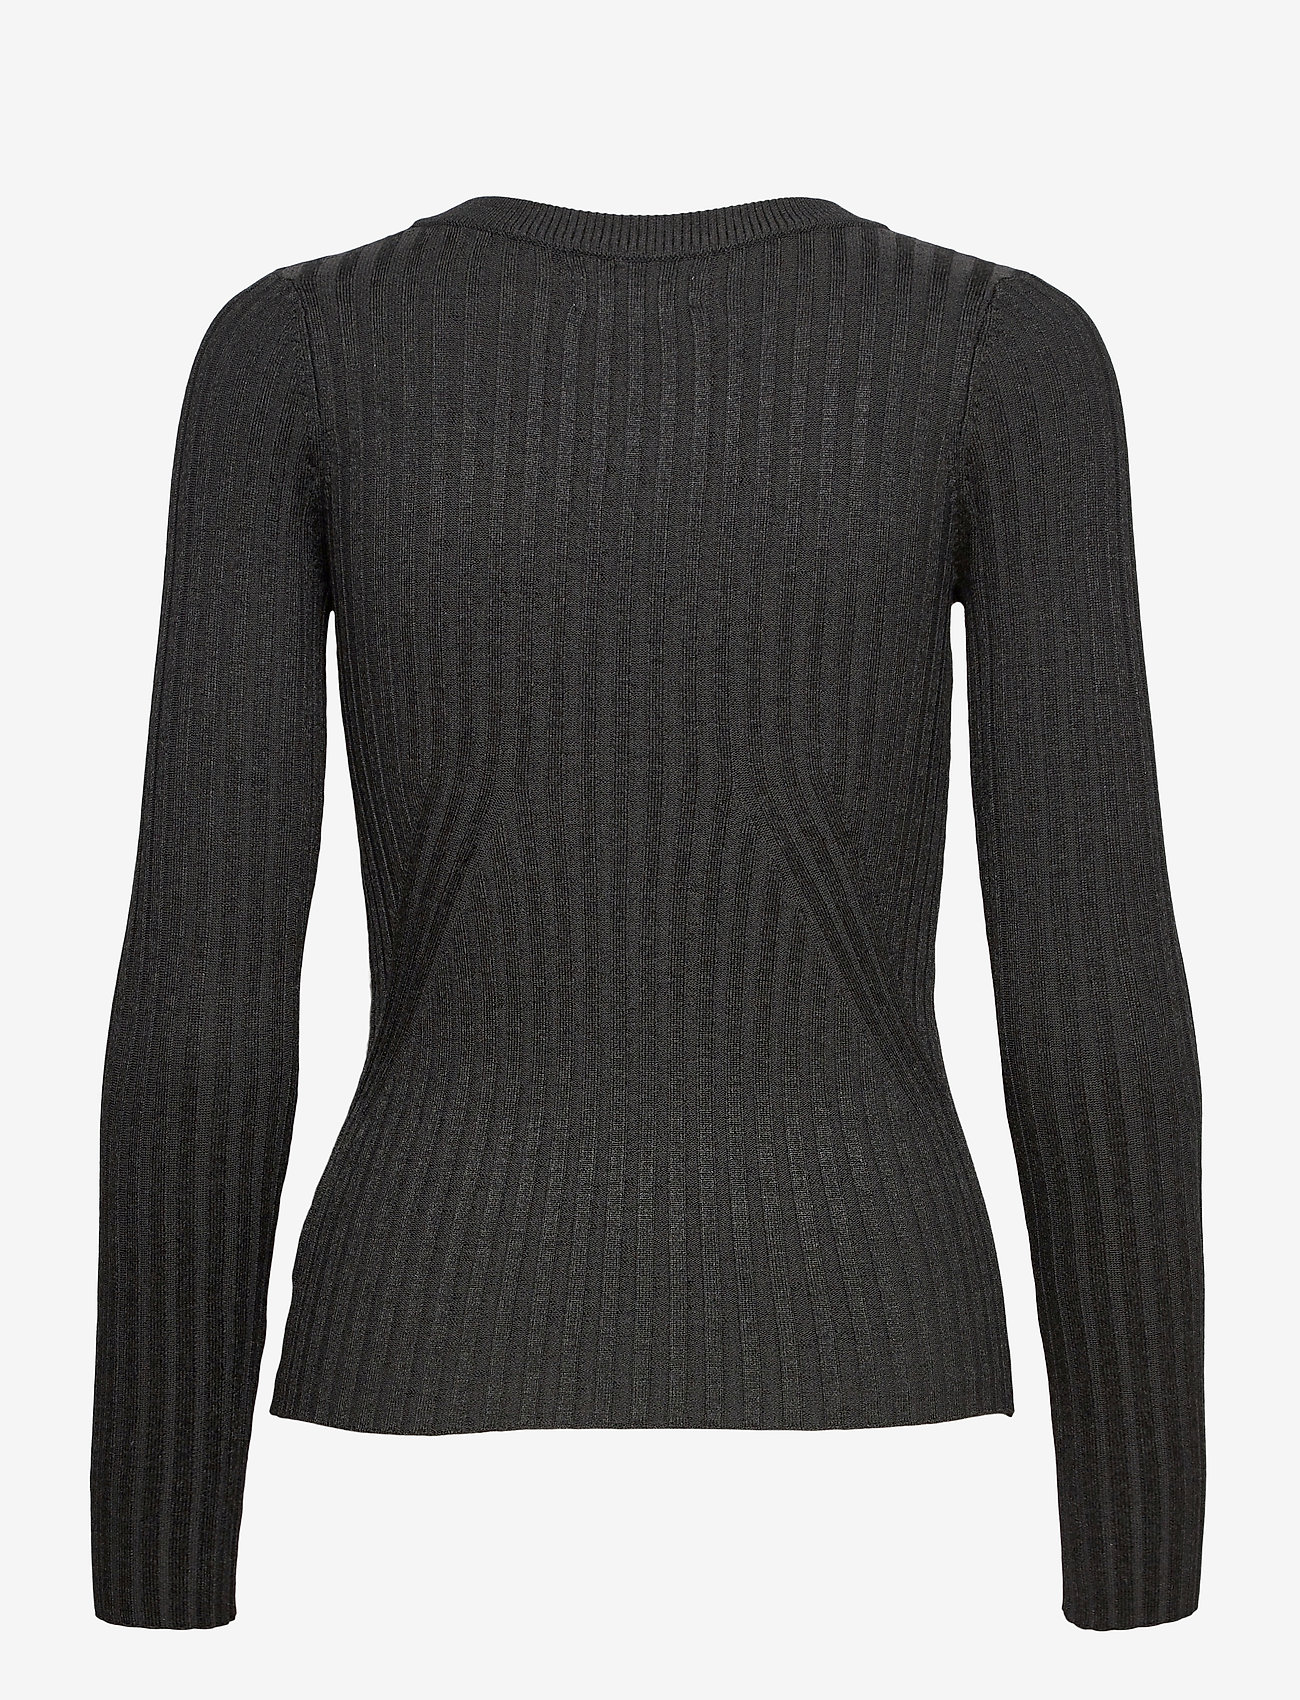 NORR - Karlina o-neck LS top - pullover - dark grey melange - 1